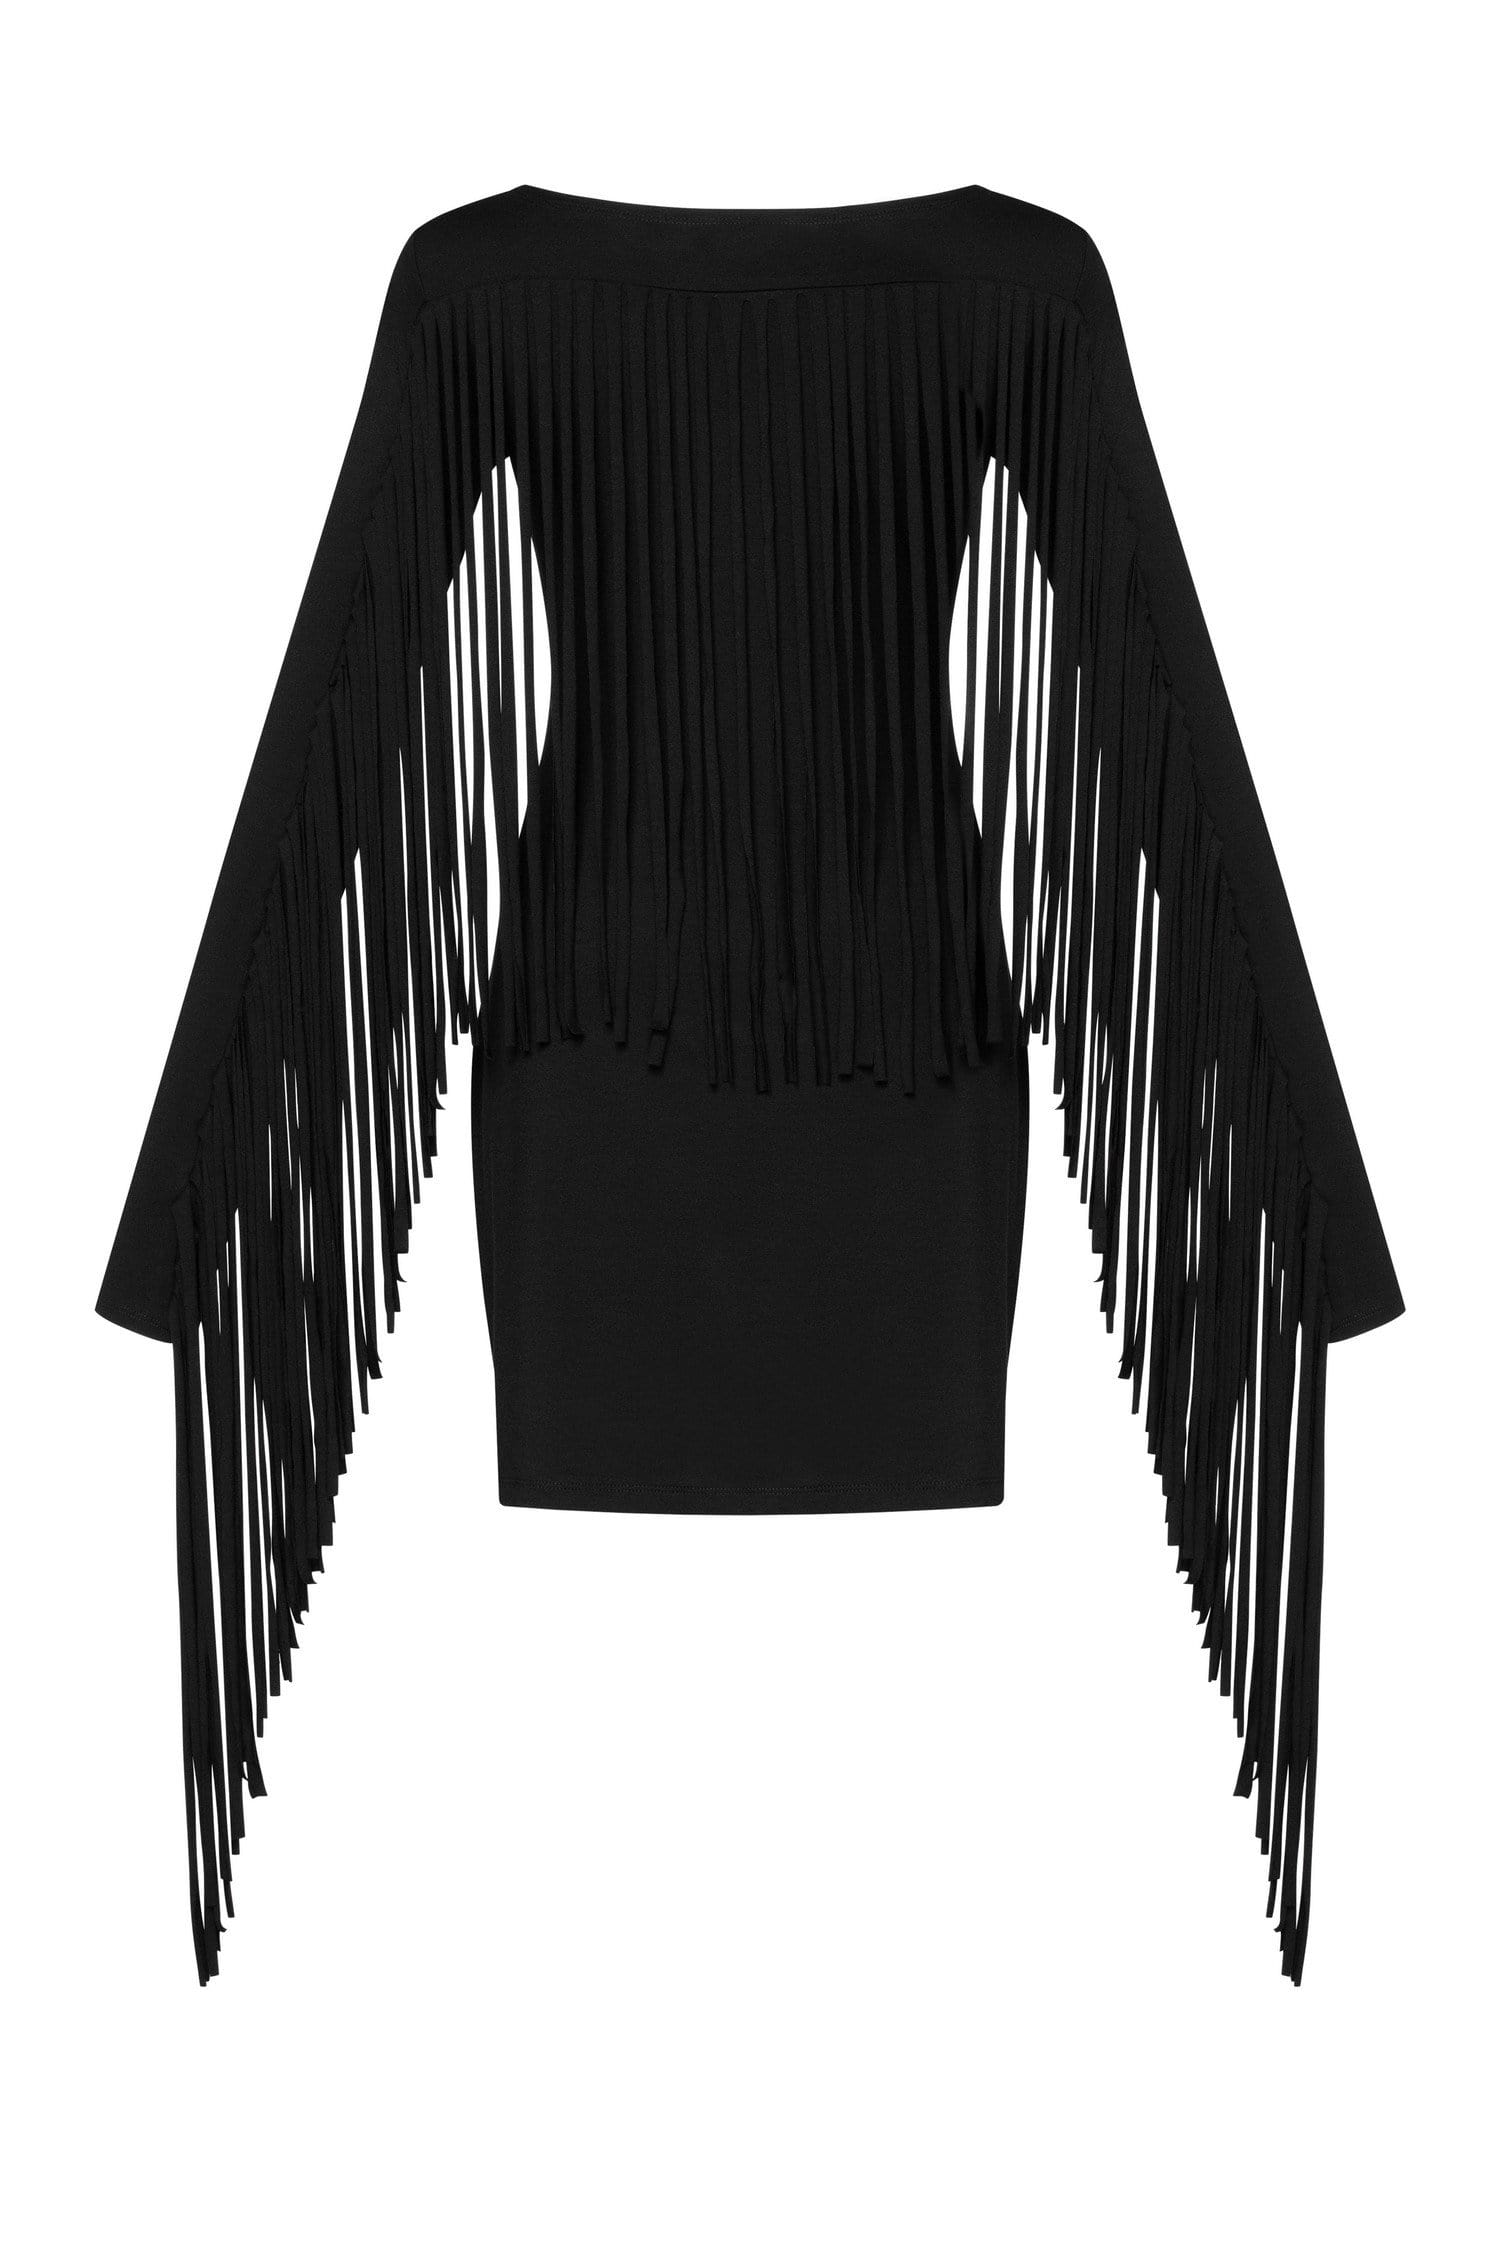 MDNT45 Dresses Fringe Mini Dress Black